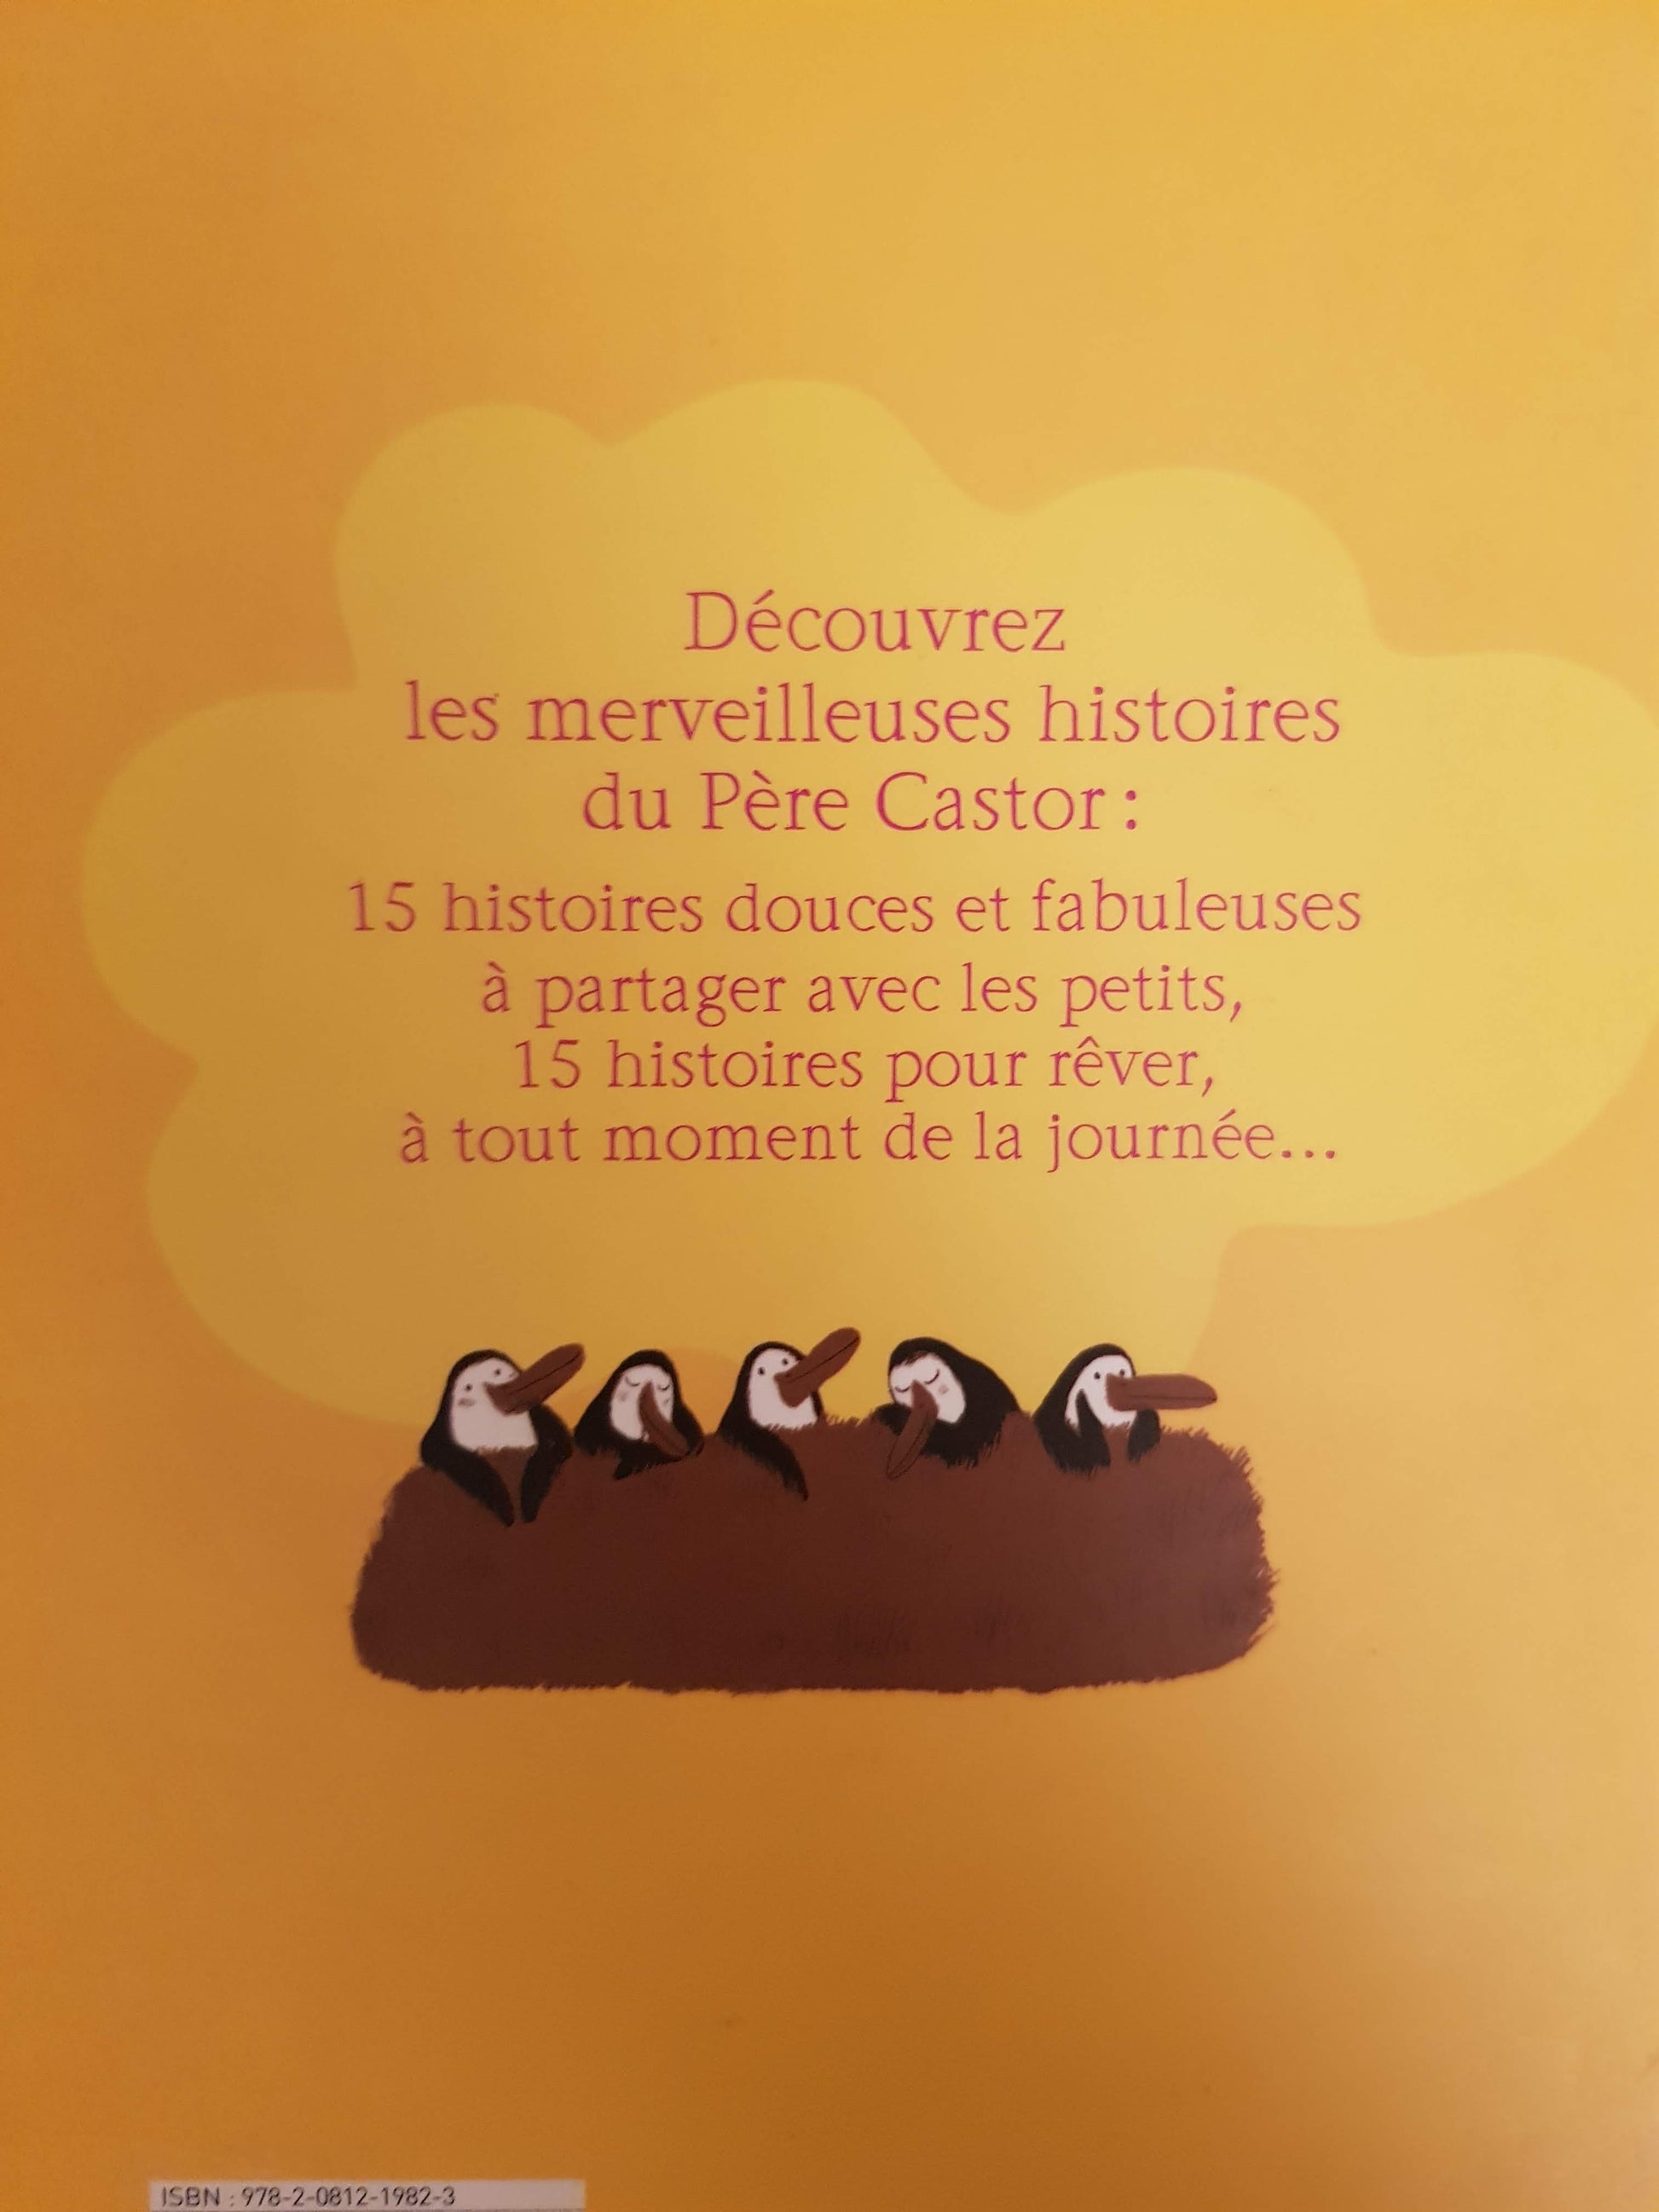 Por Faire rever les petits Very Good Petites Histoires du Pere Castor  (6049525694649)